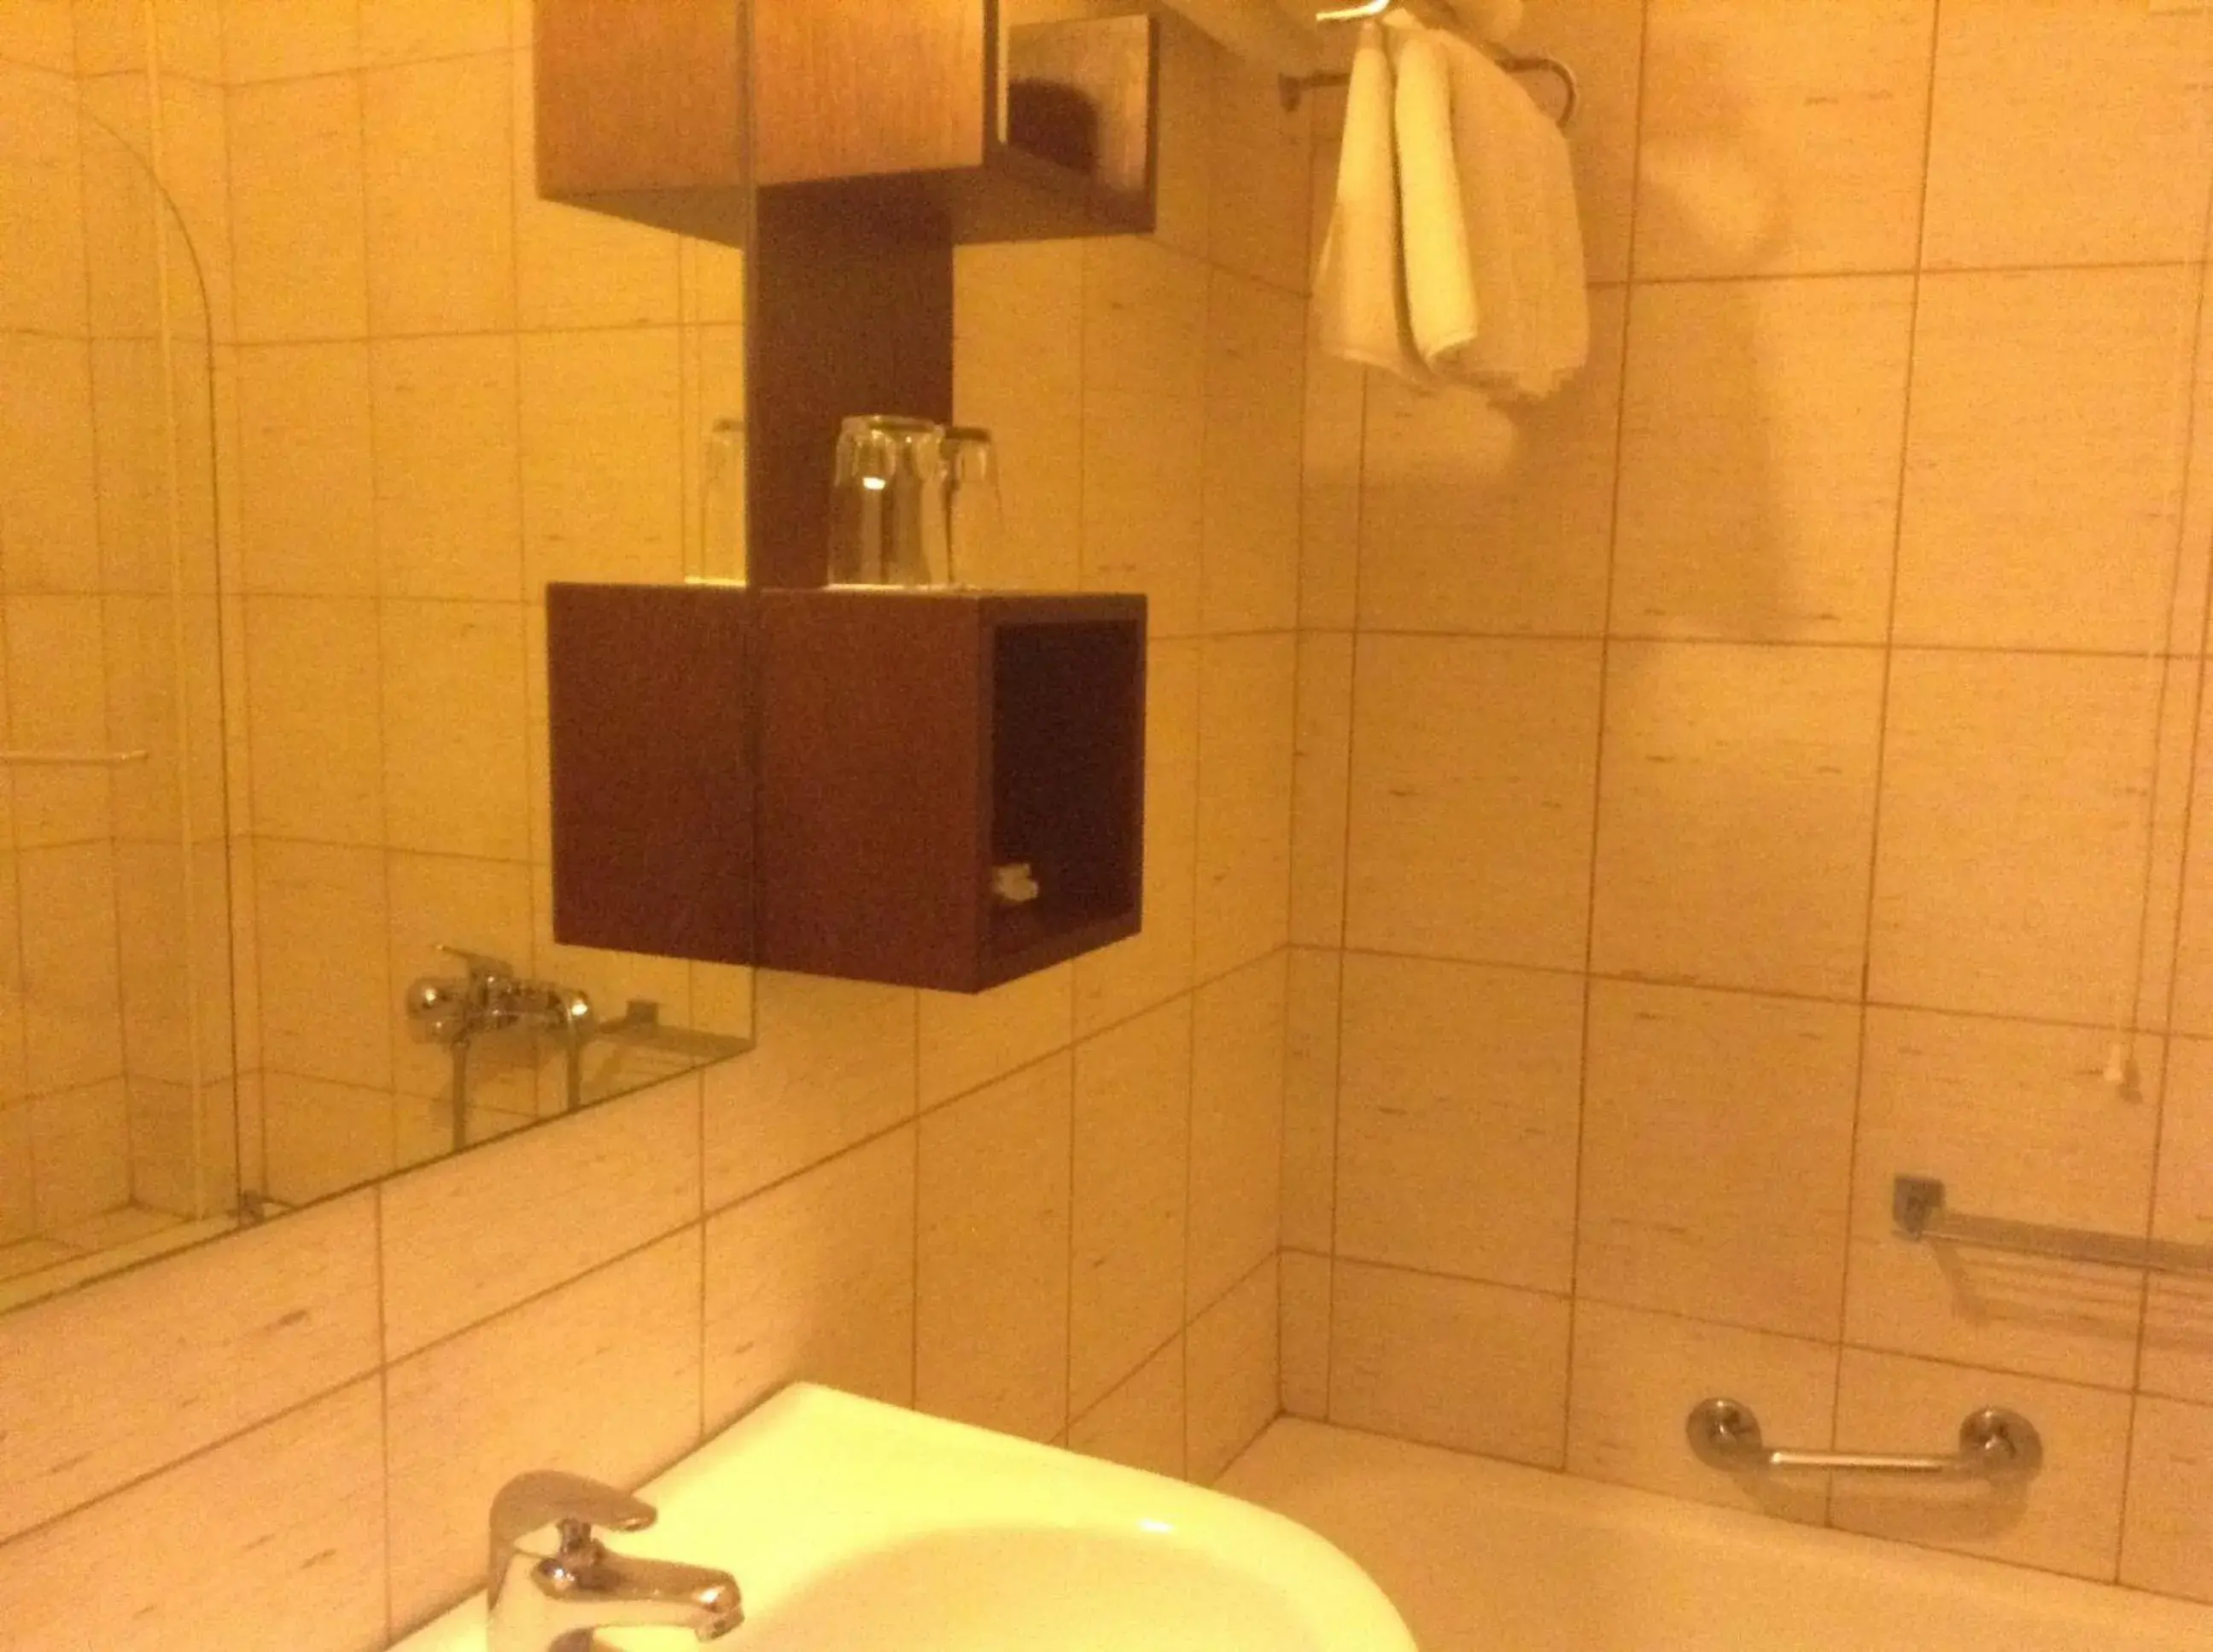 Bathroom in Hotel Electra